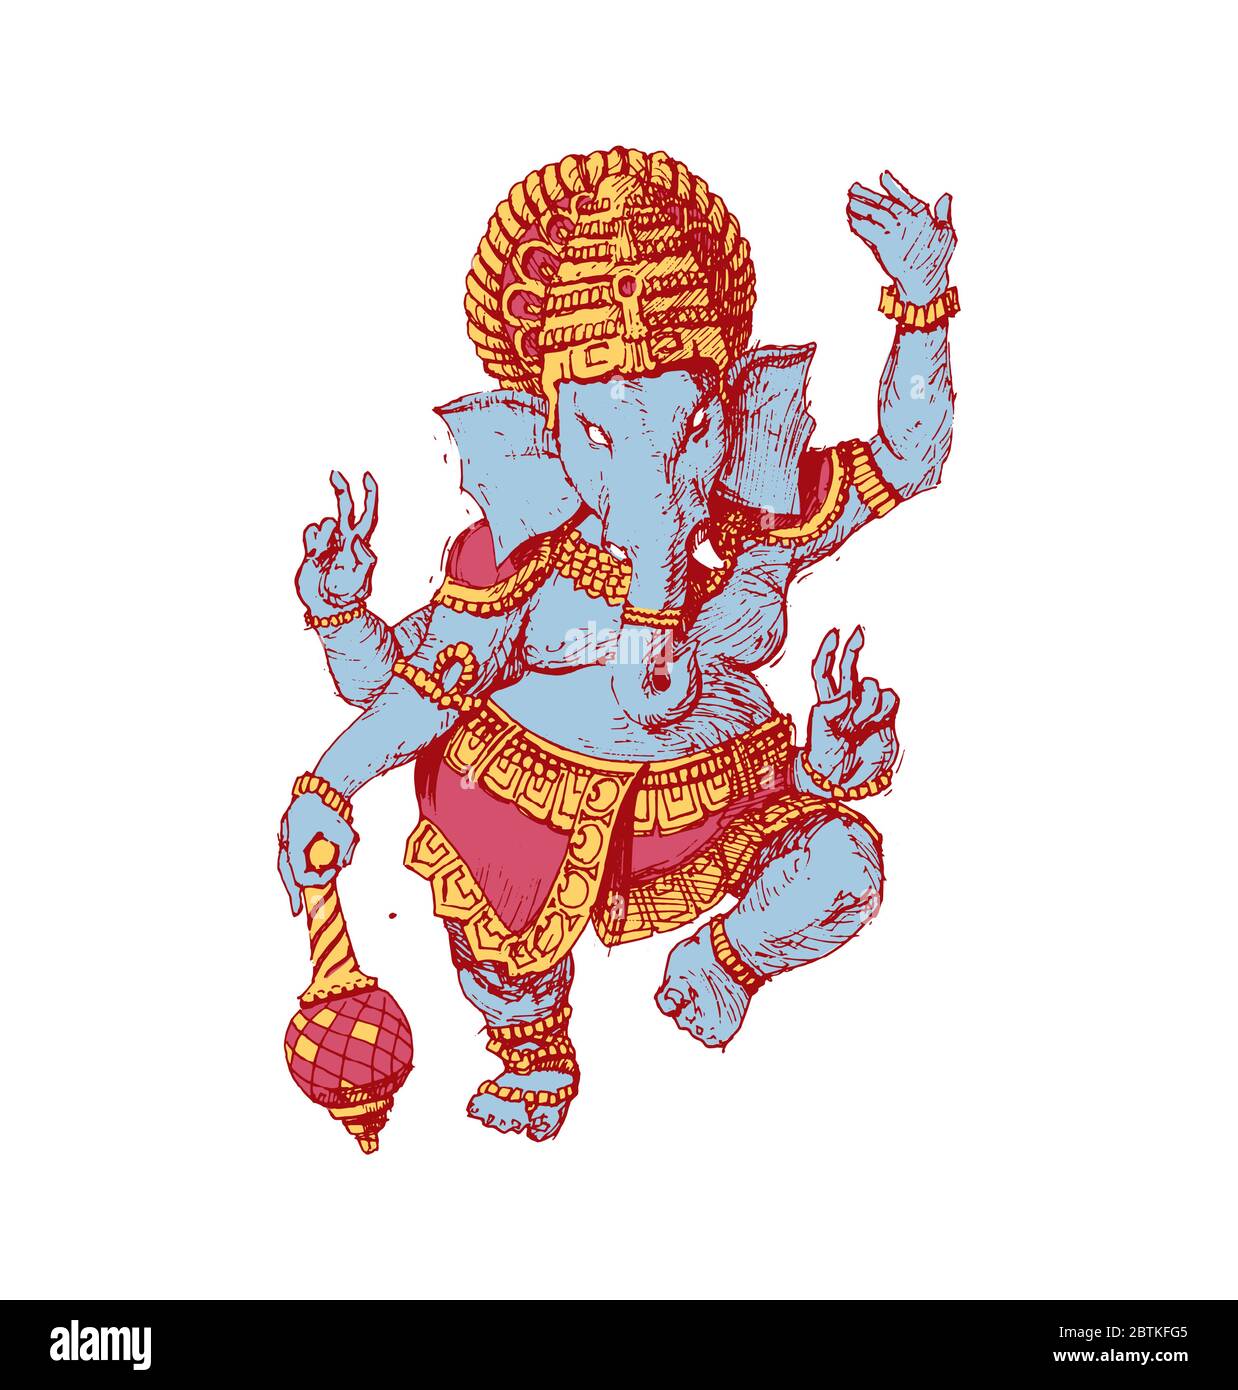 Zeichnung des gottes Ganesha helle Farbe Vektor Illustration. Indische Kultur. Stock Vektor